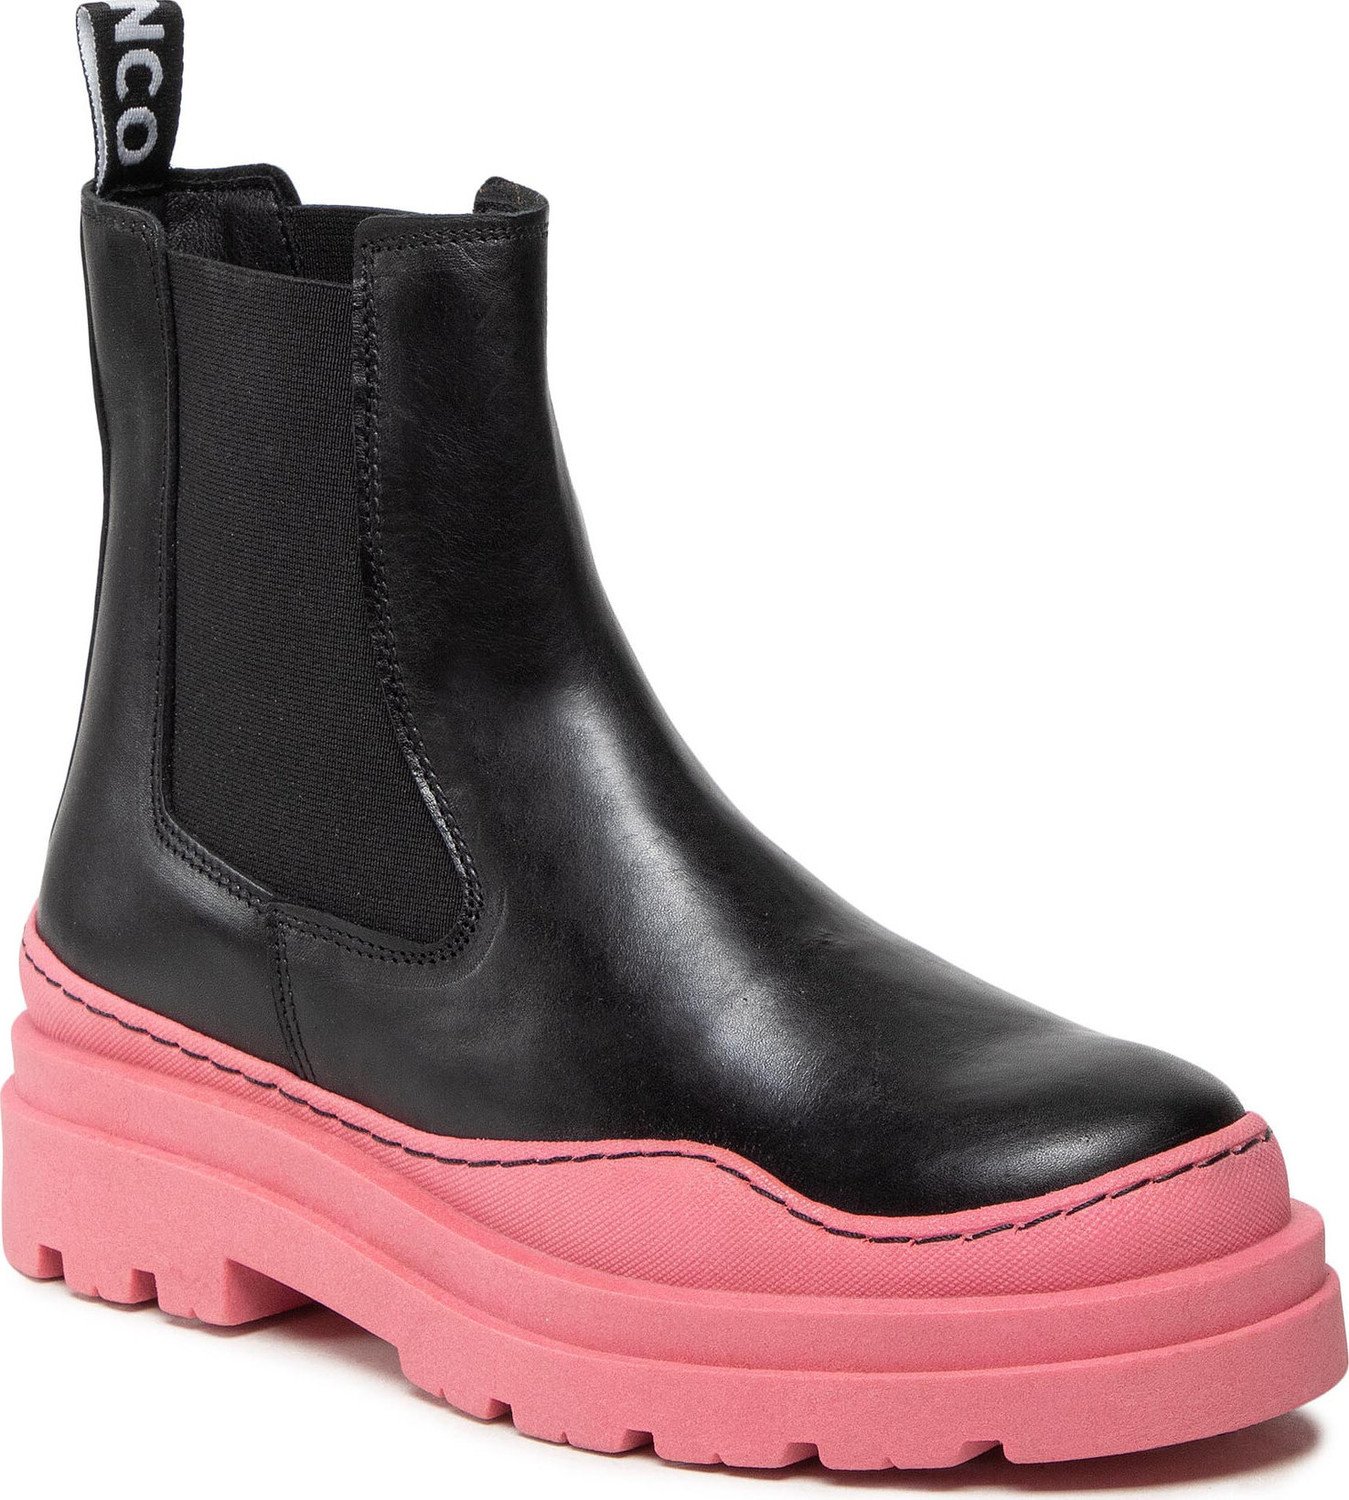 Kotníková obuv s elastickým prvkem Bianco 11300006 Black/Pink